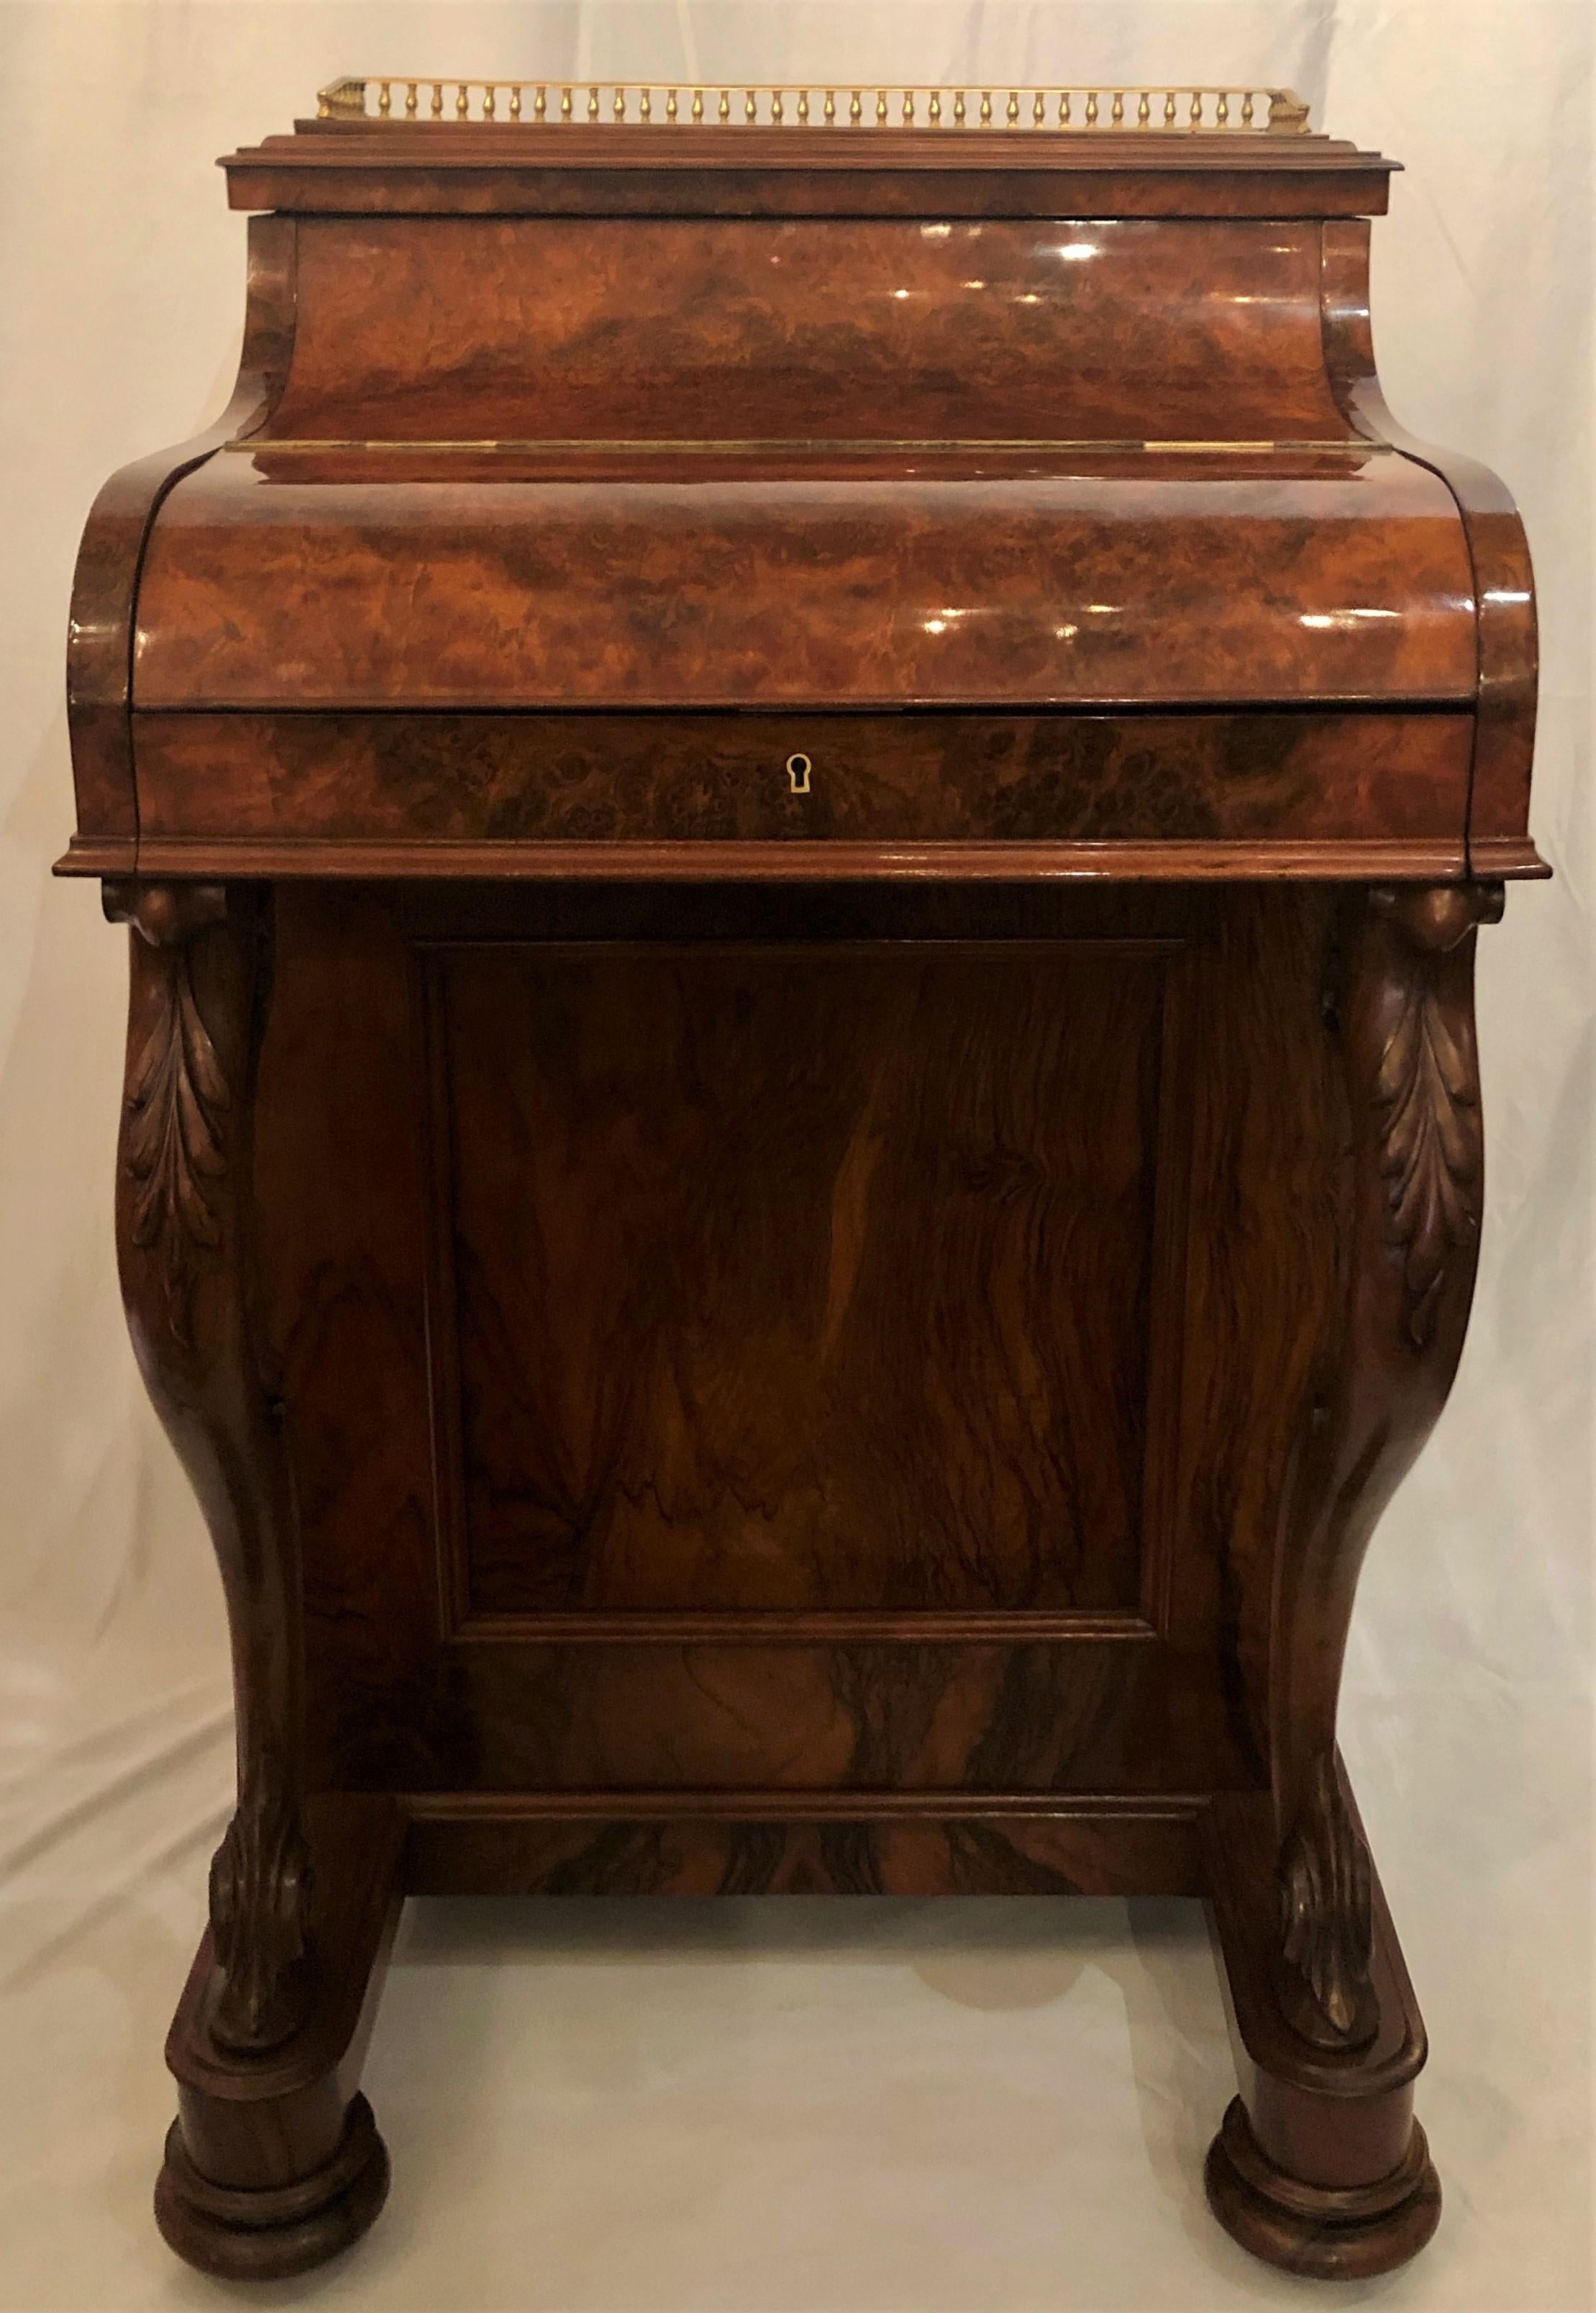 Antique English burled walnut mechanical davenport desk.
EWD048.